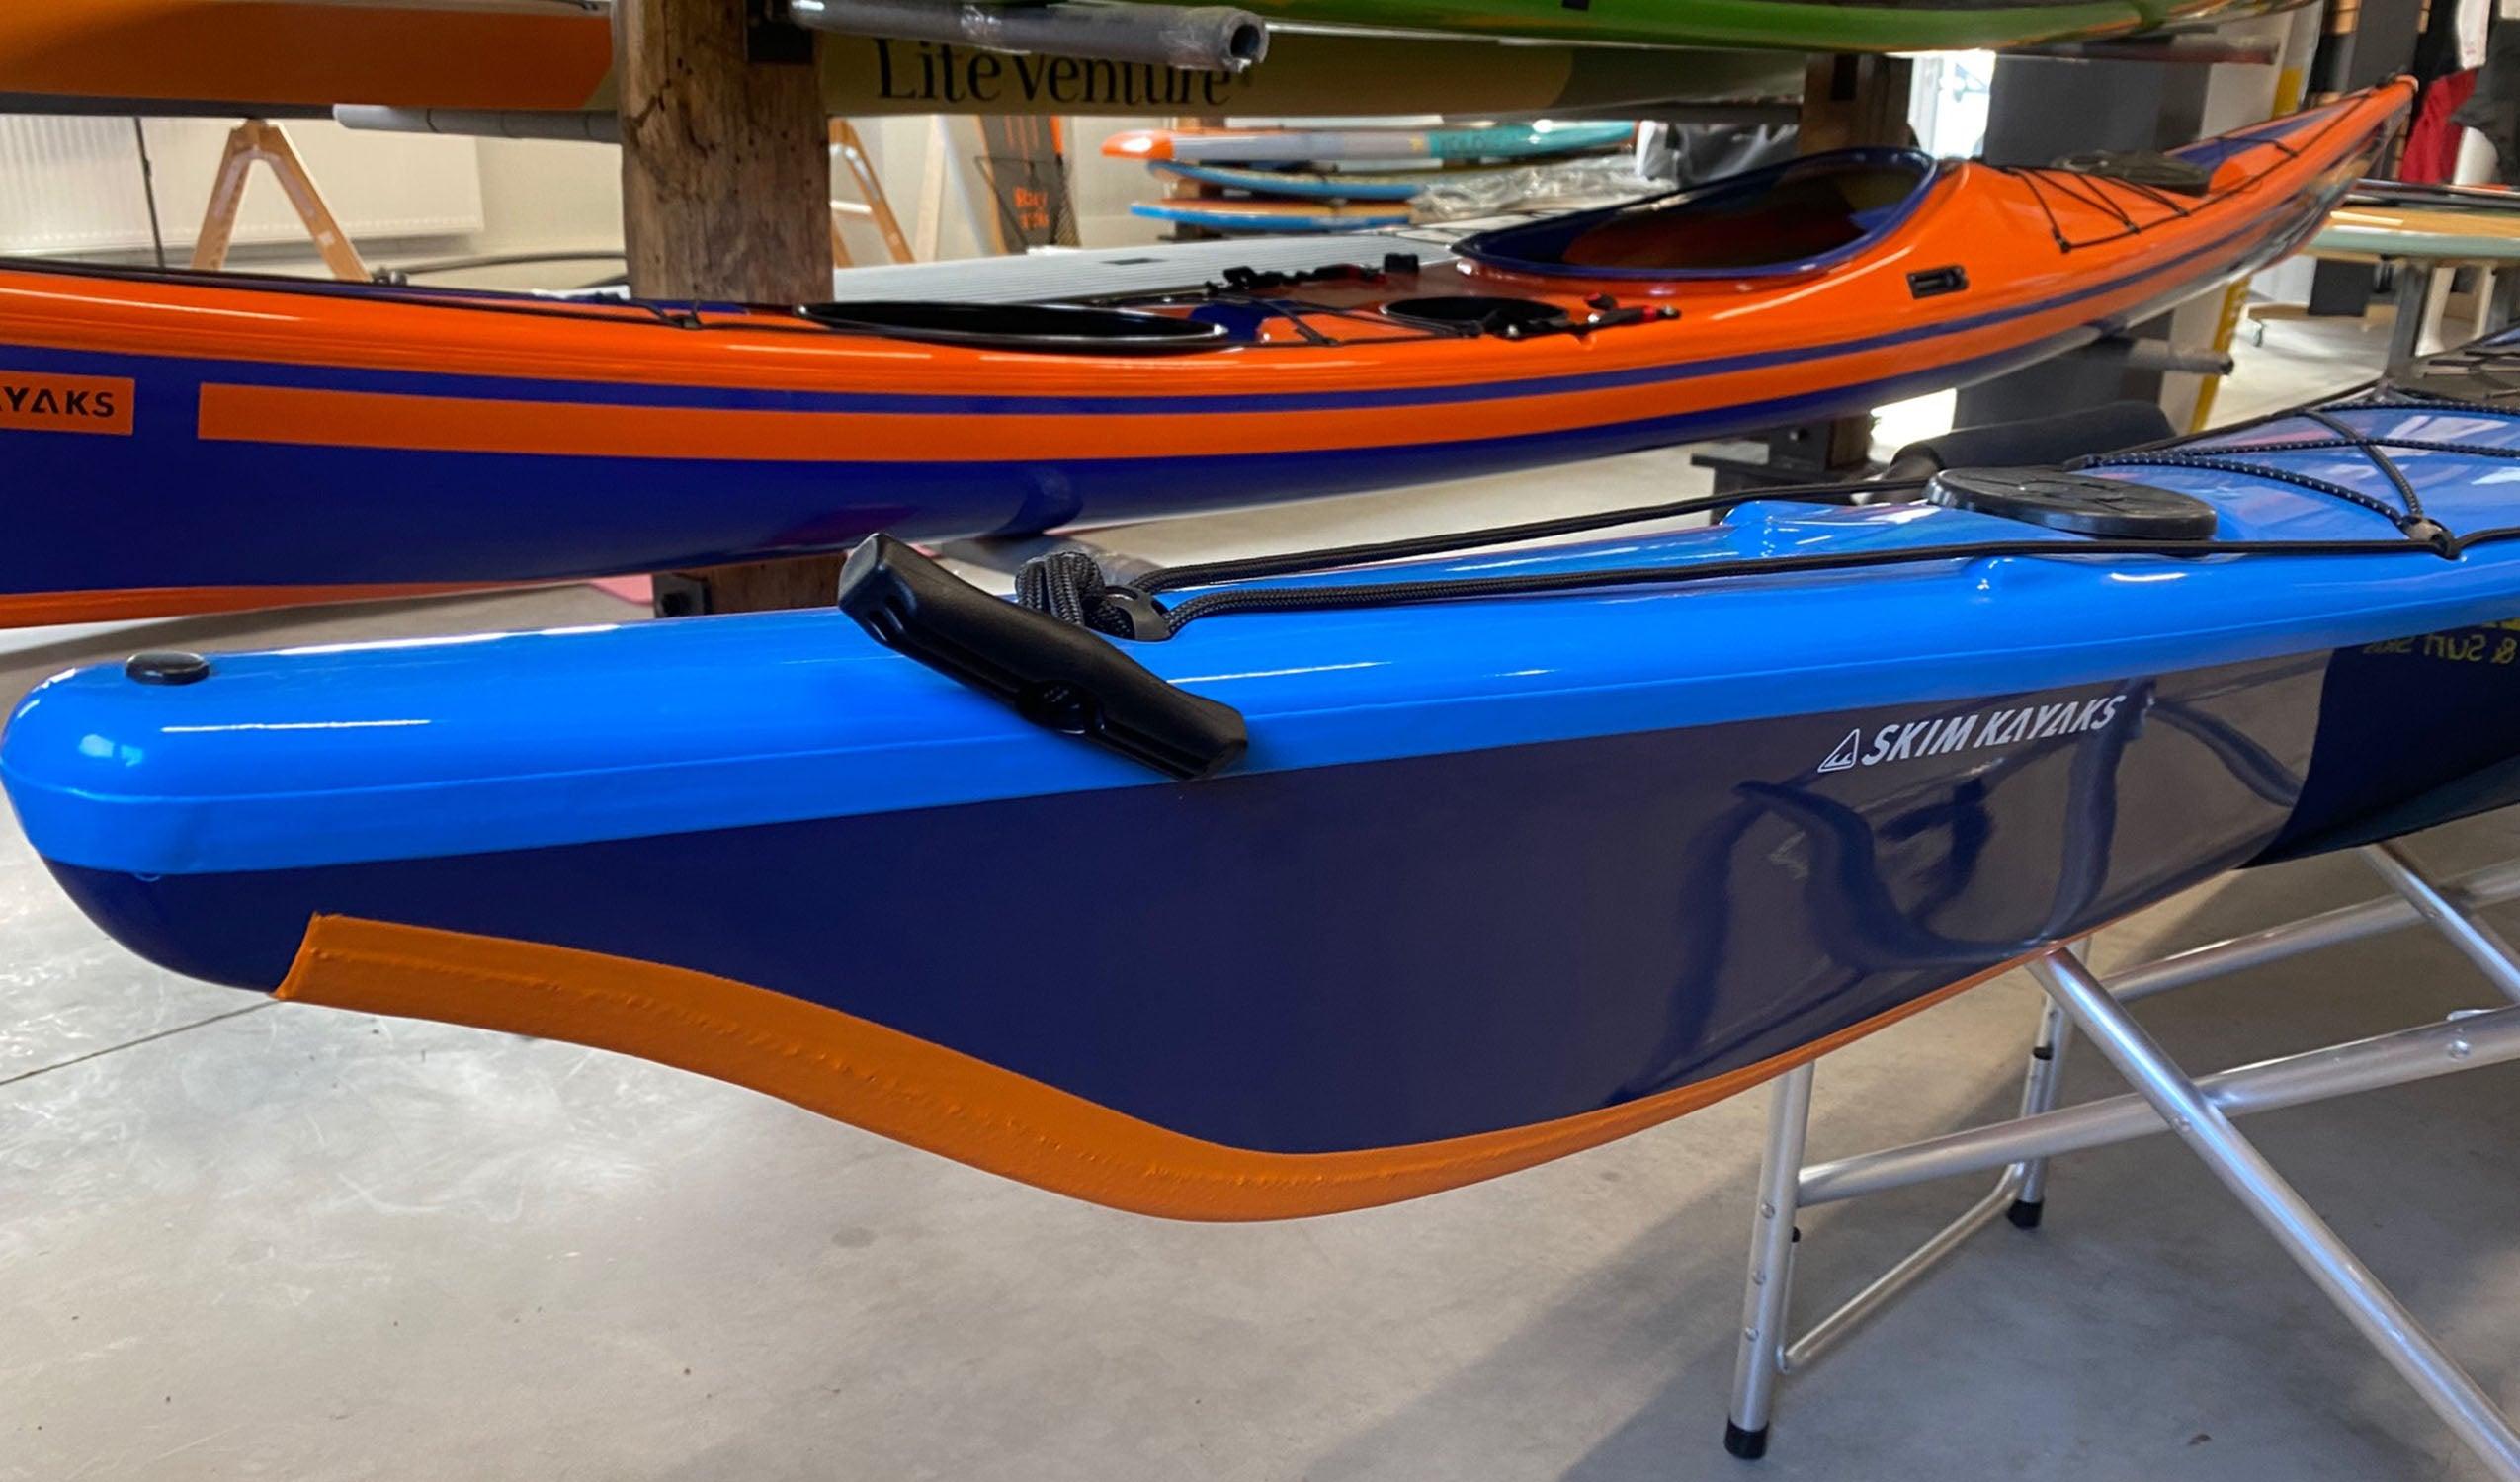 Produktbild von Kajak " Artisan 5G Traditional-blau orange " der Marke SKIM Kayaks für 3155.00 €. Erhältlich online bei Lite Venture ( www.liteventure.de )